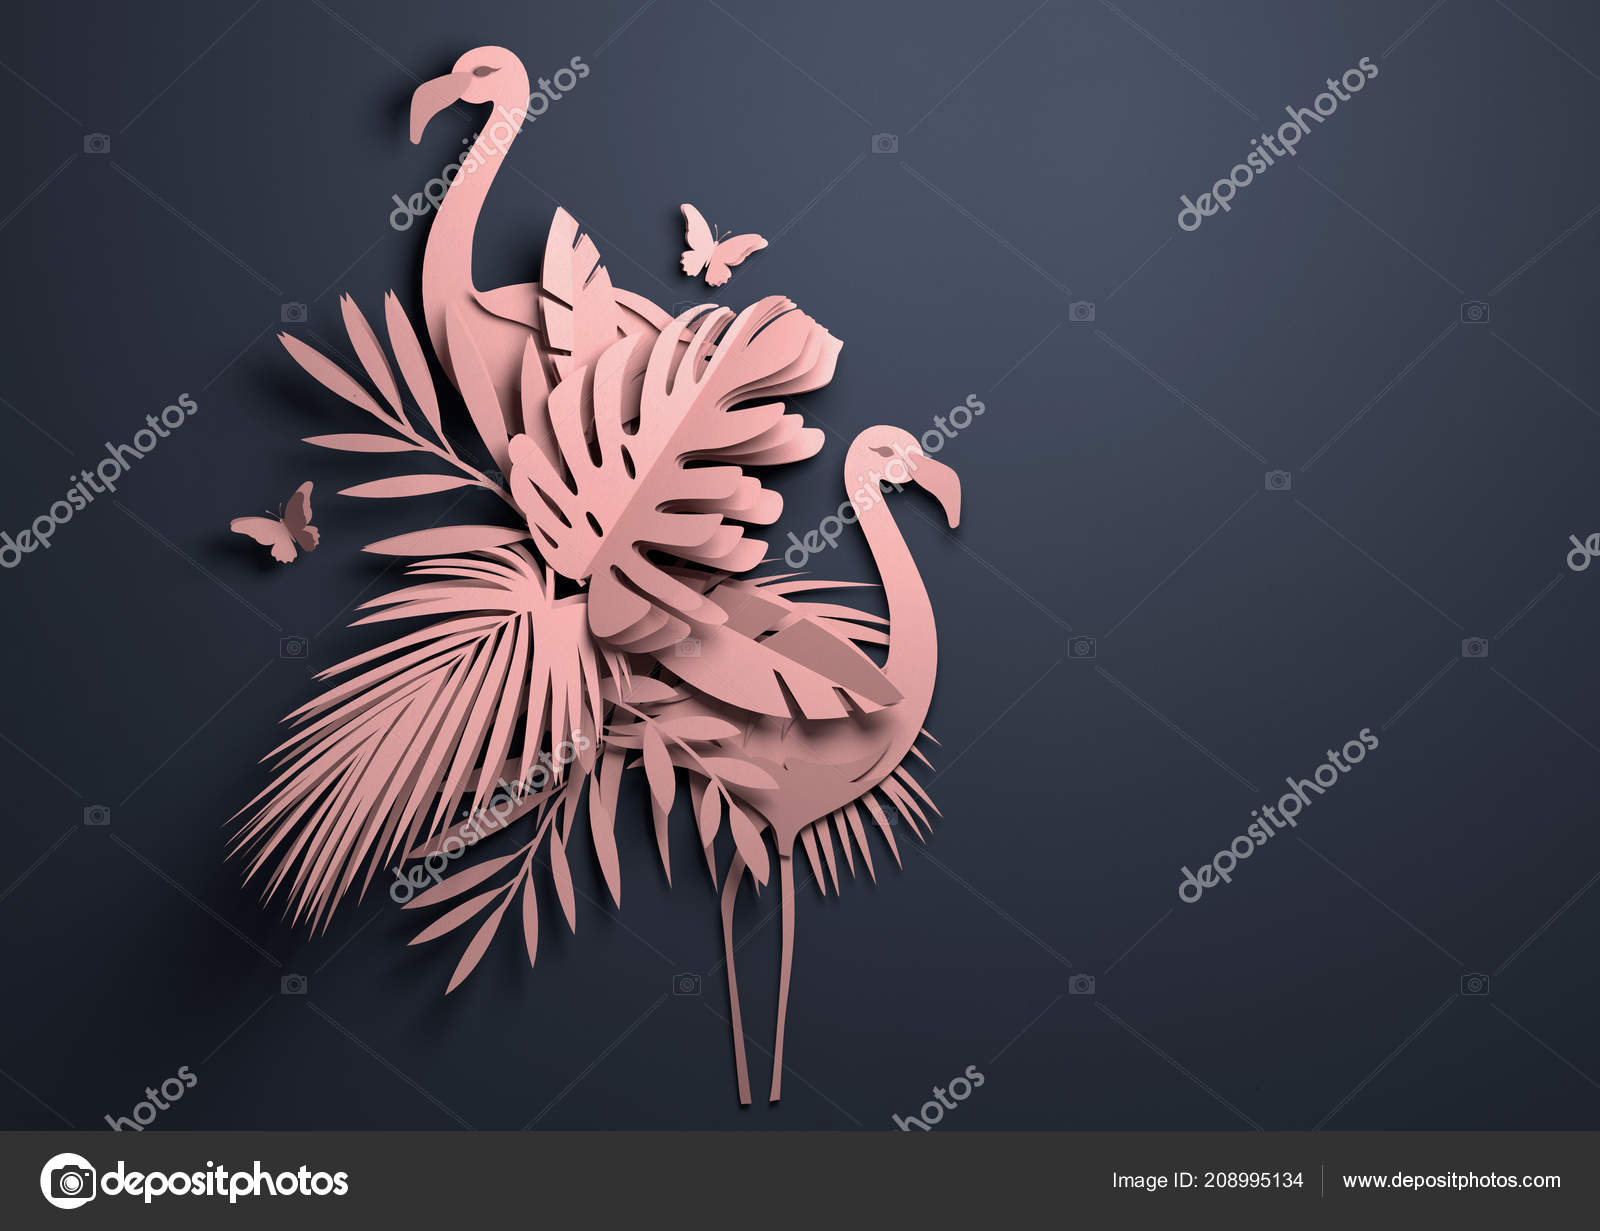 3D Origami Flamingo